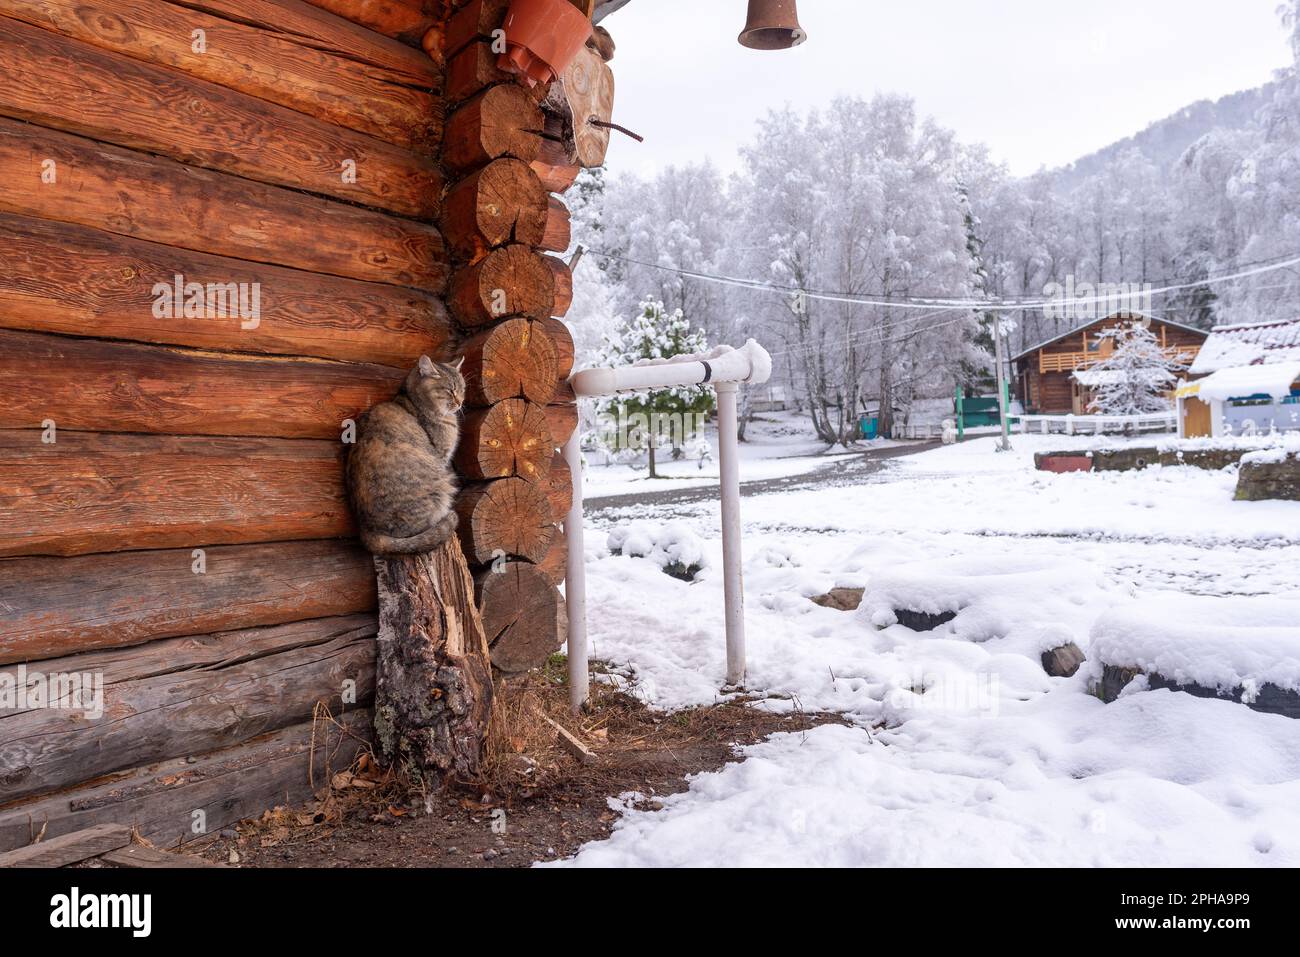 Un gatto del villaggio siede su un moncone vicino al muro di un cottage di legno con una campana sul coperchio nella neve in inverno nella Altai in Siberia. Foto Stock